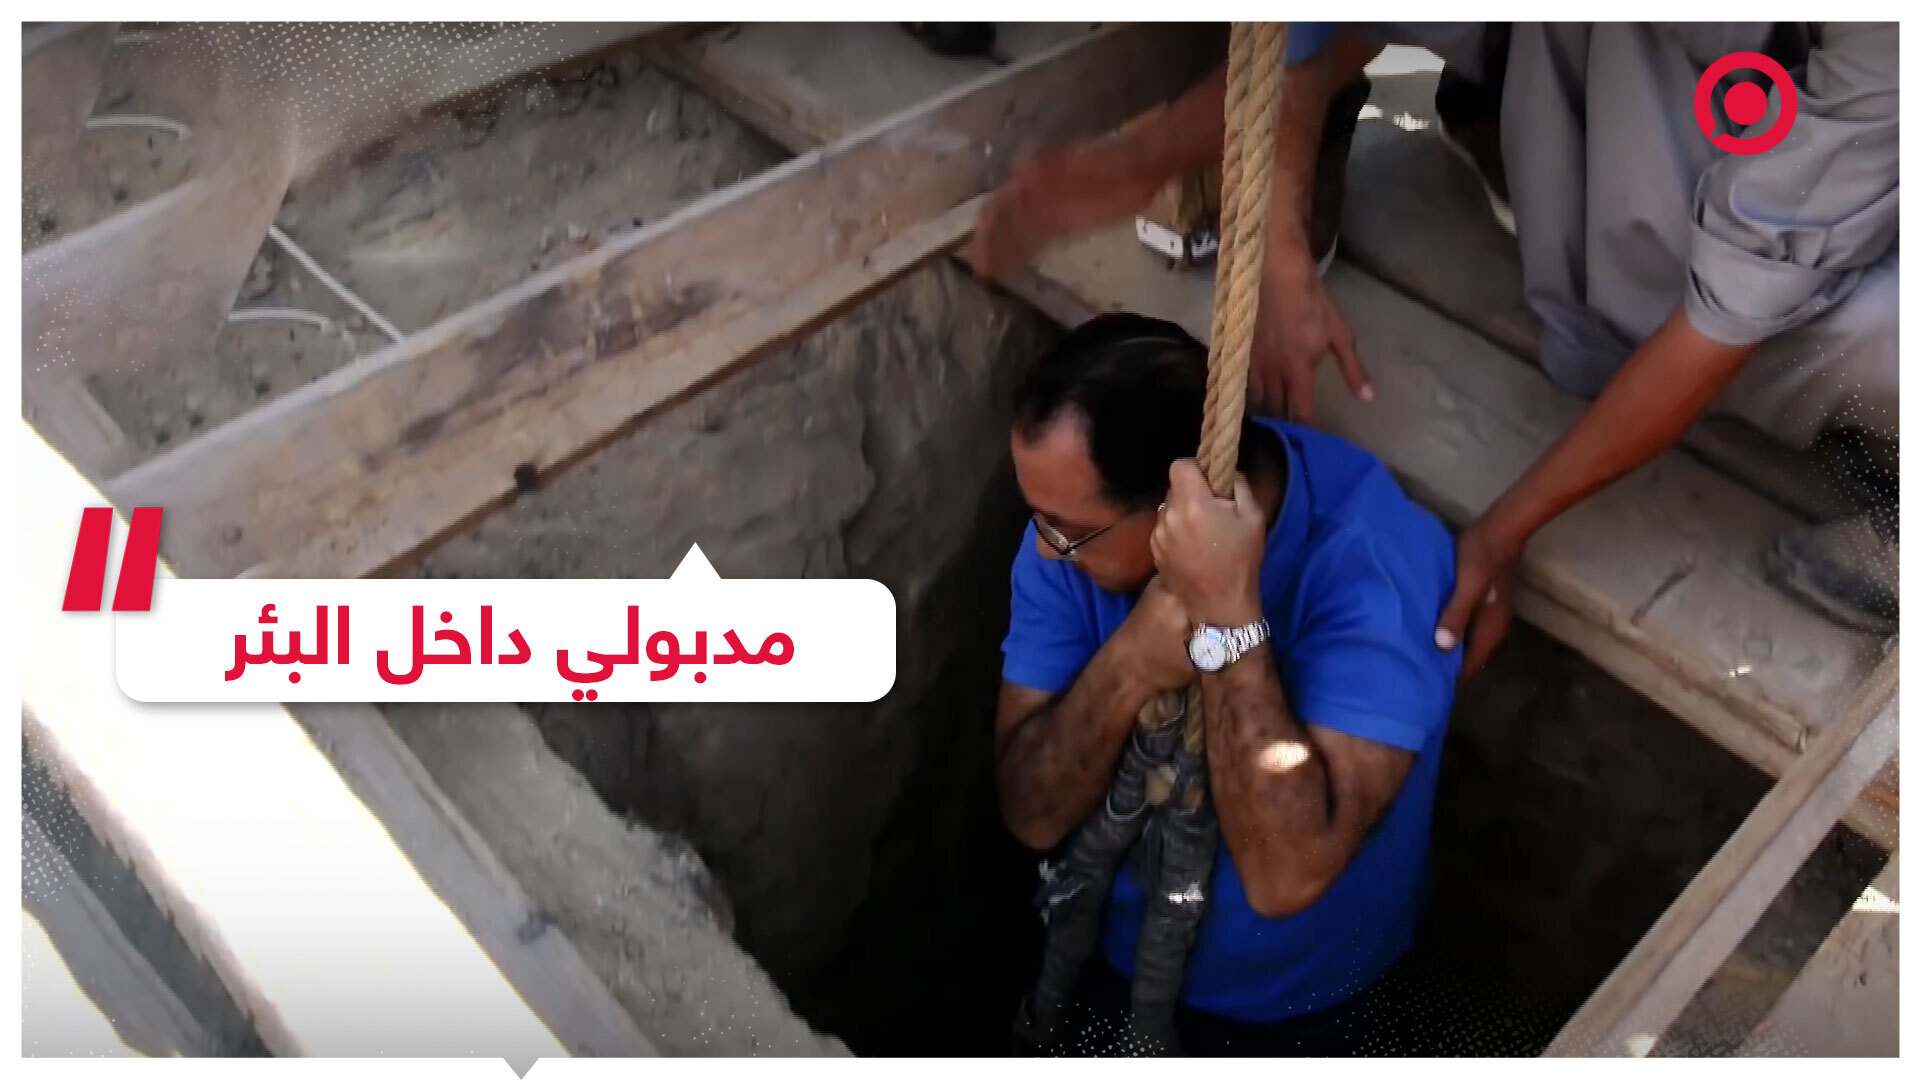 رئيس الوزراء المصري داخل بئر في سقارة قبل الإعلان عن كشف أثري كبير